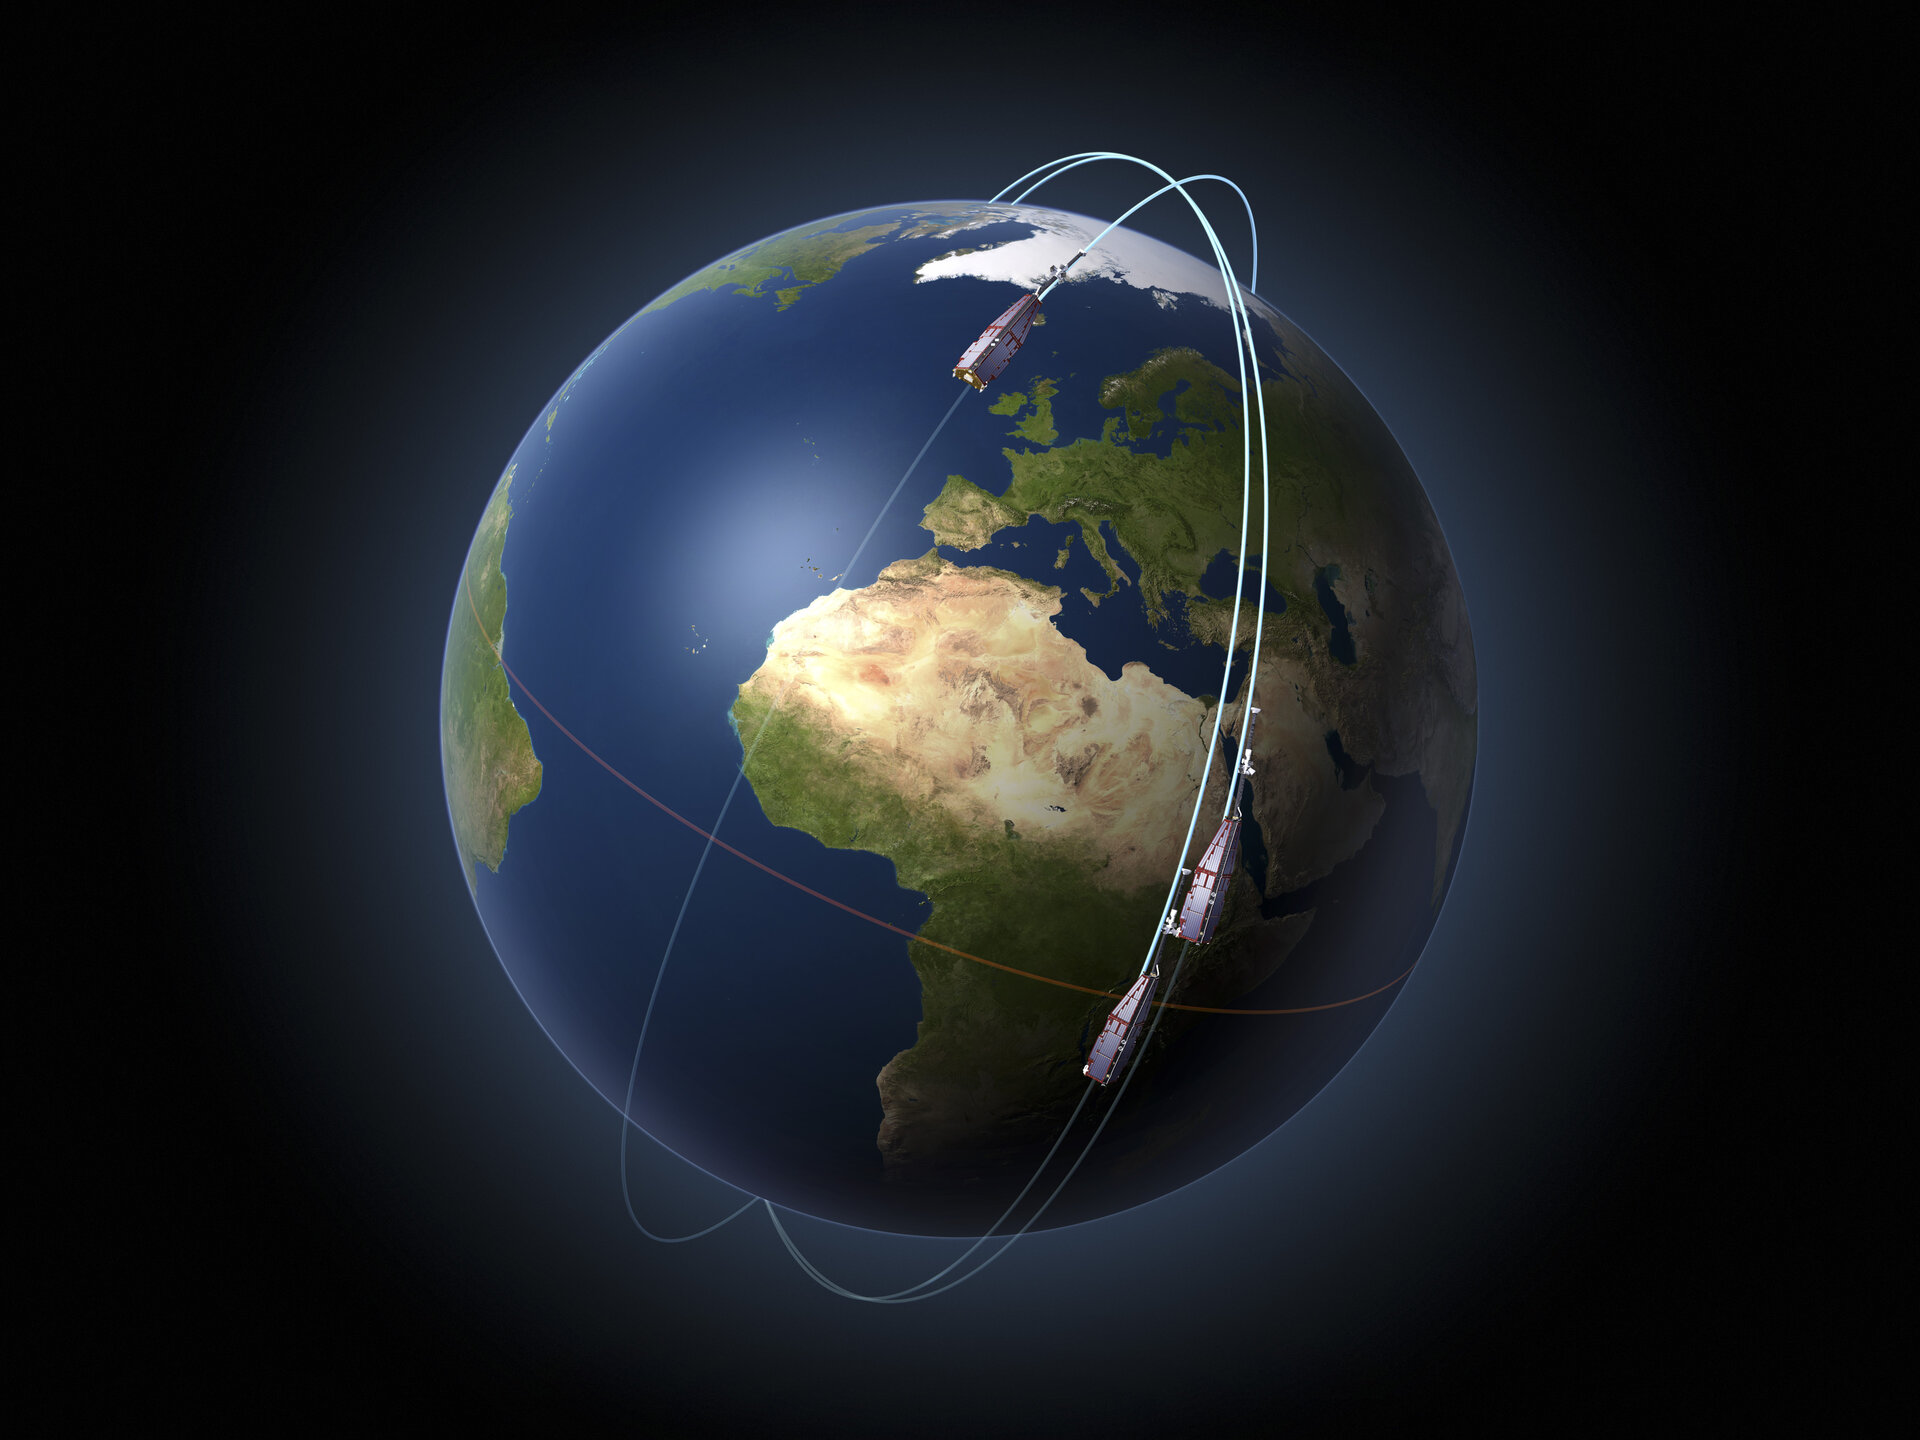 De Swarm-satellieten in hun baan rond de aarde